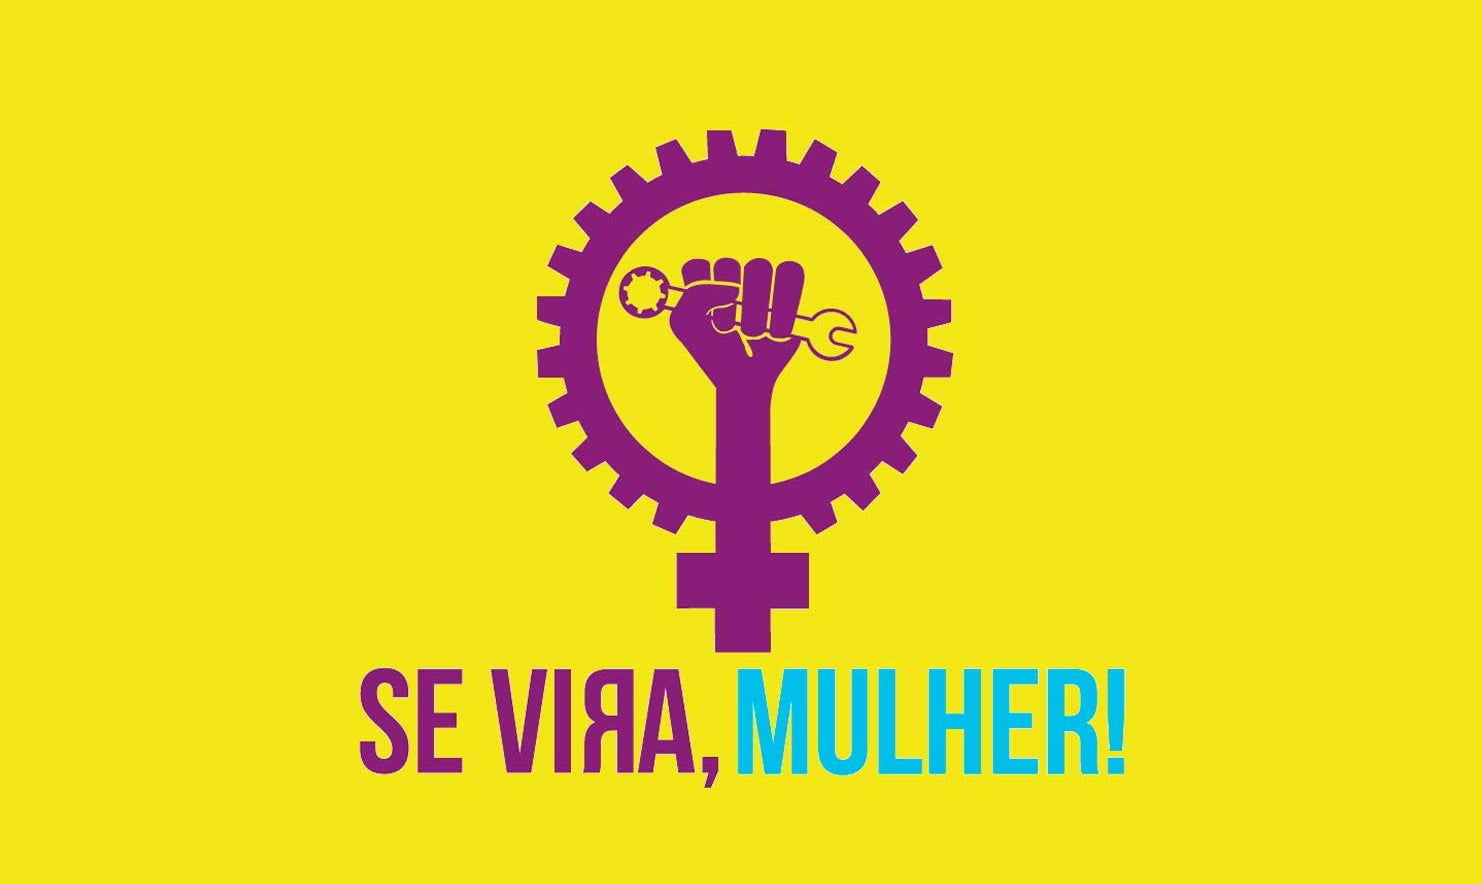 (imagem com ilustração do logotipo da "Se Vira, Mulher!" em fundo amarelo)